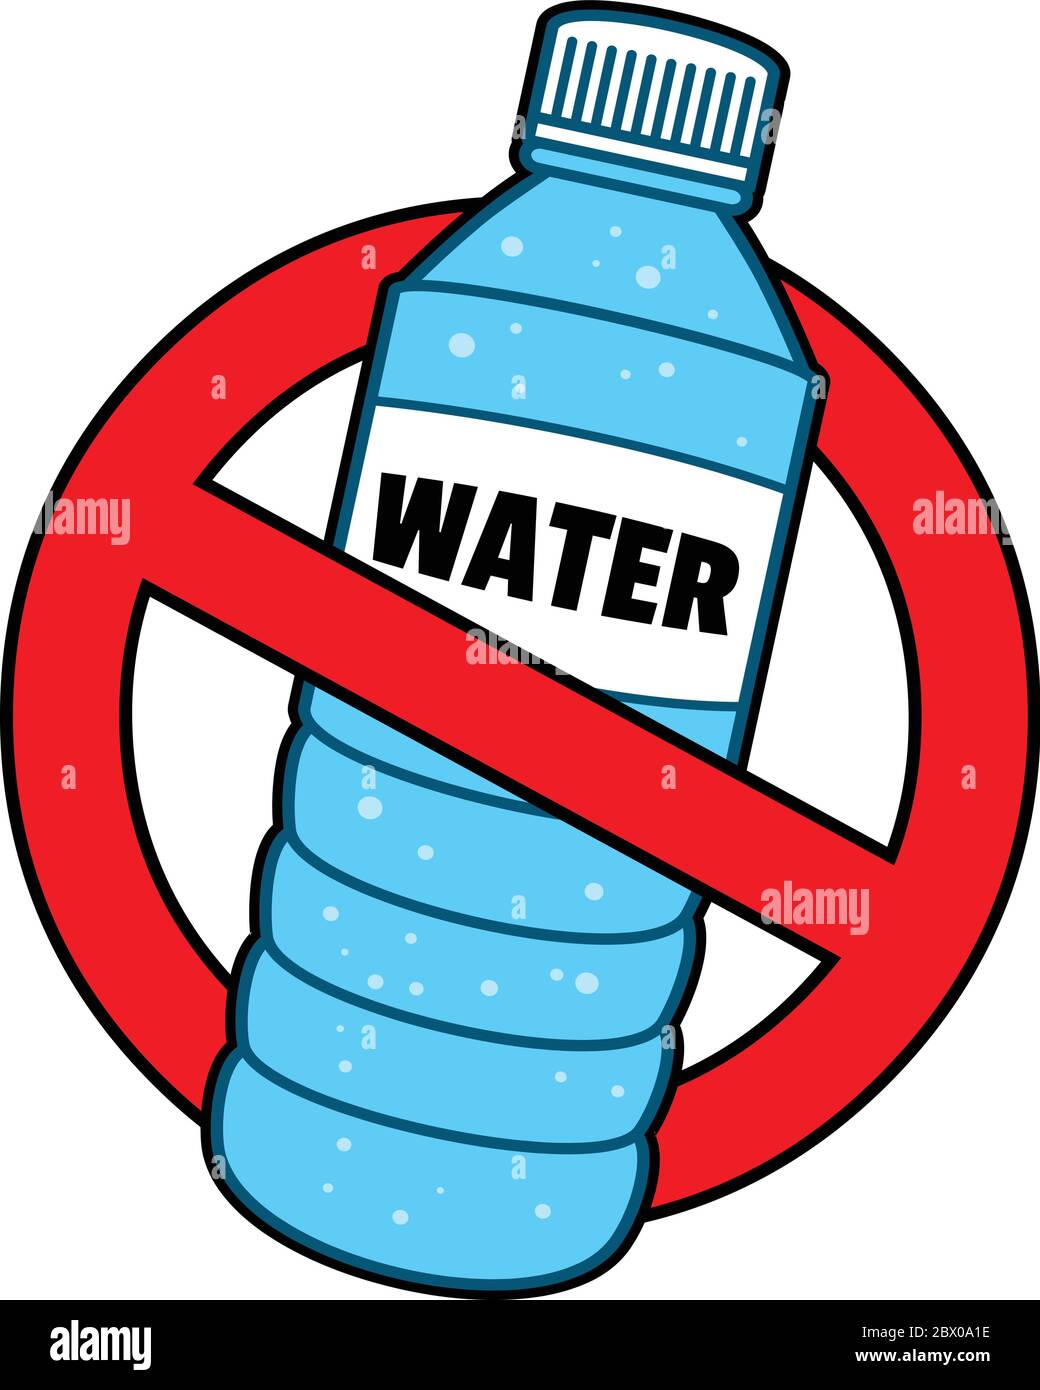 Interdiction des bouteilles d'eau - une illustration d'une interdiction des bouteilles d'eau. Illustration de Vecteur